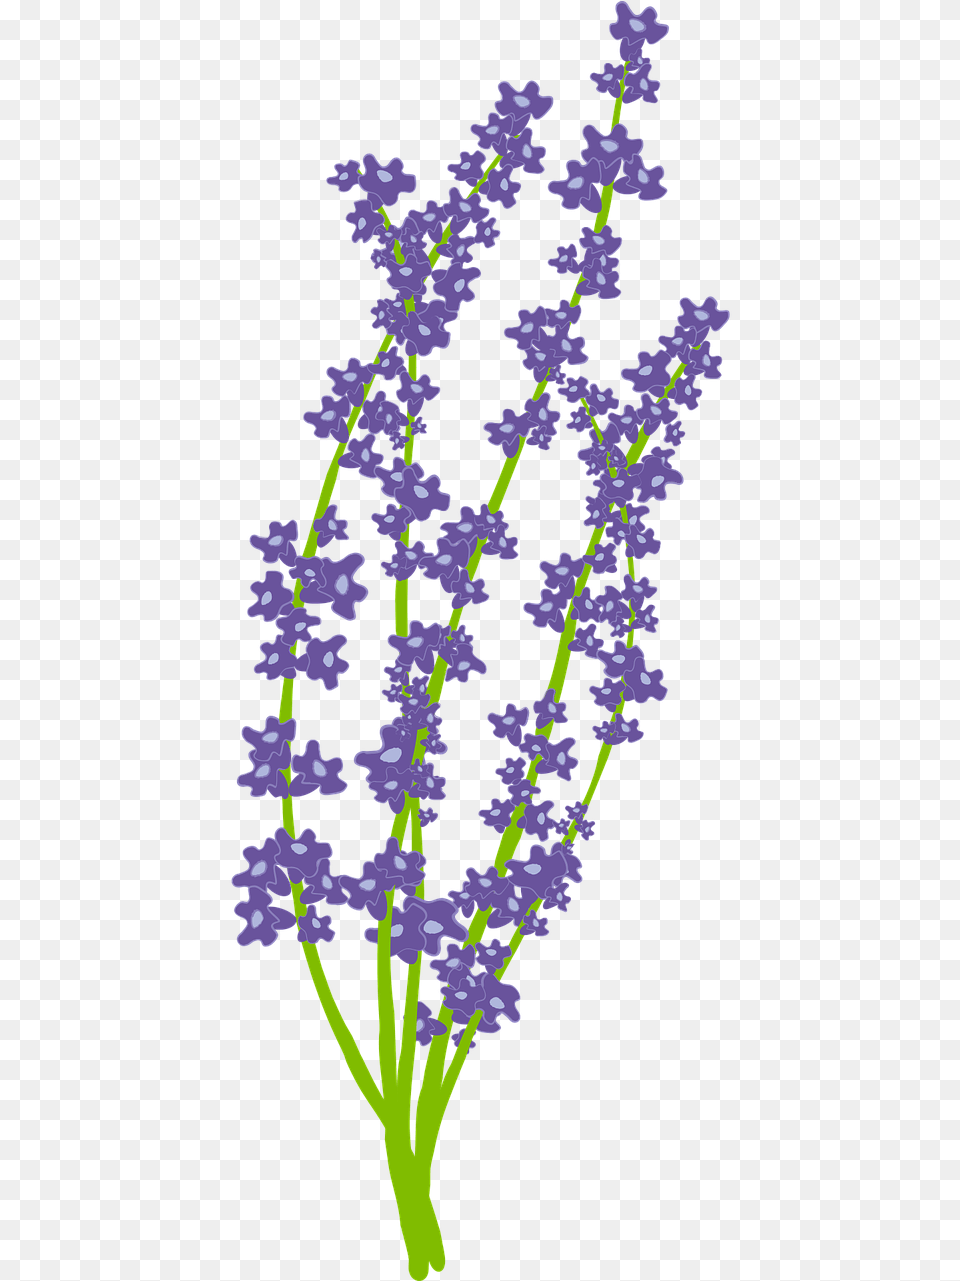 Flower Nature Usc Lavender Graduation, Plant, Purple Free Png